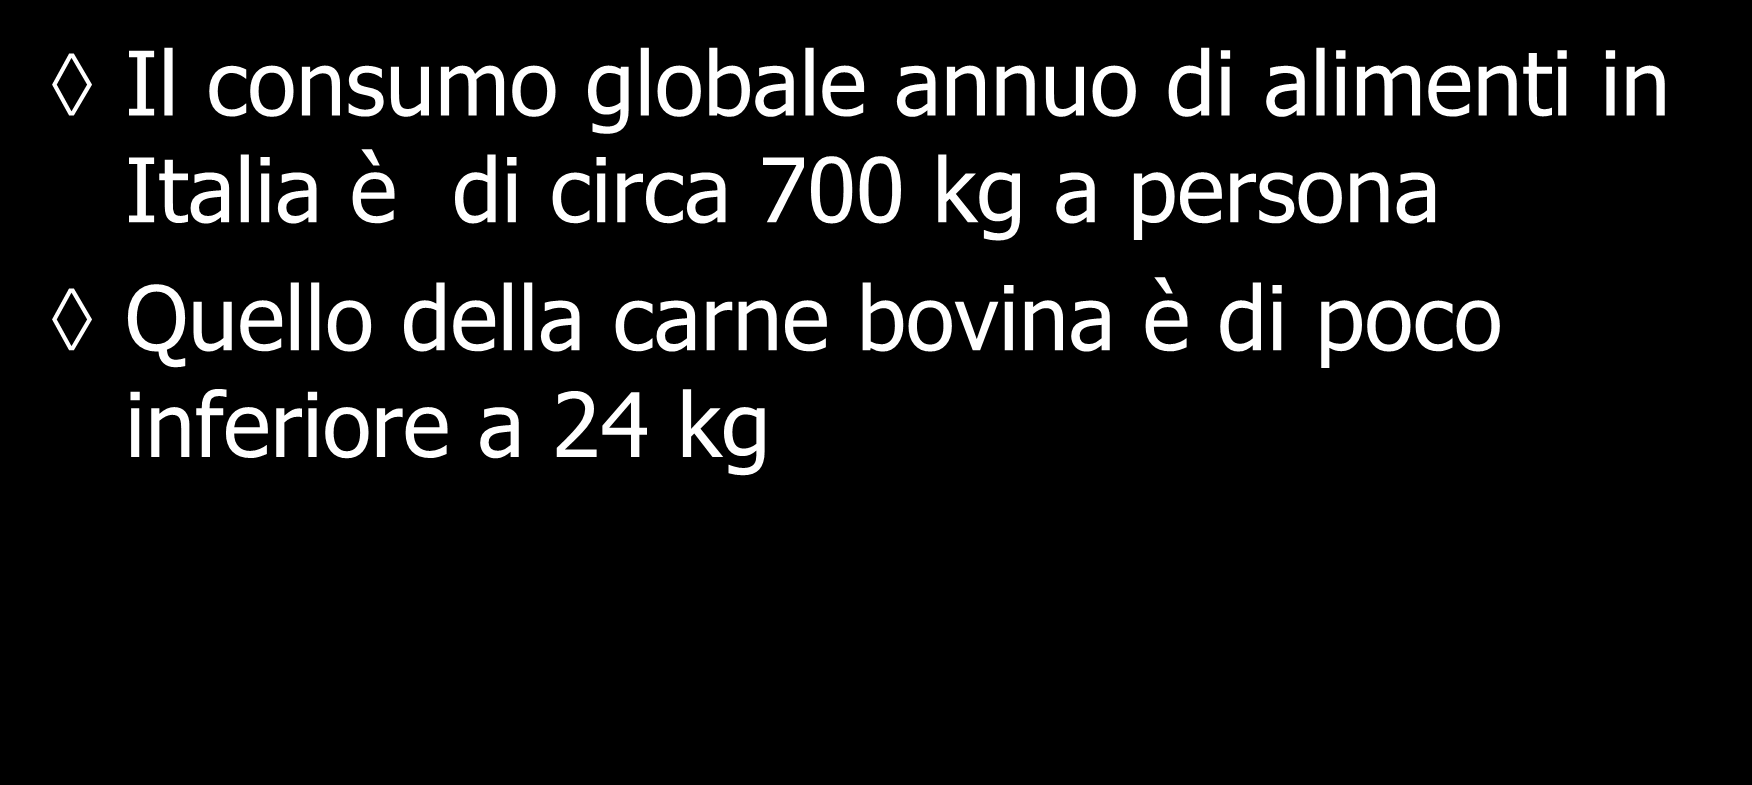 Consumi della carne bovina Il consumo globale annuo di alimenti in Italia è di